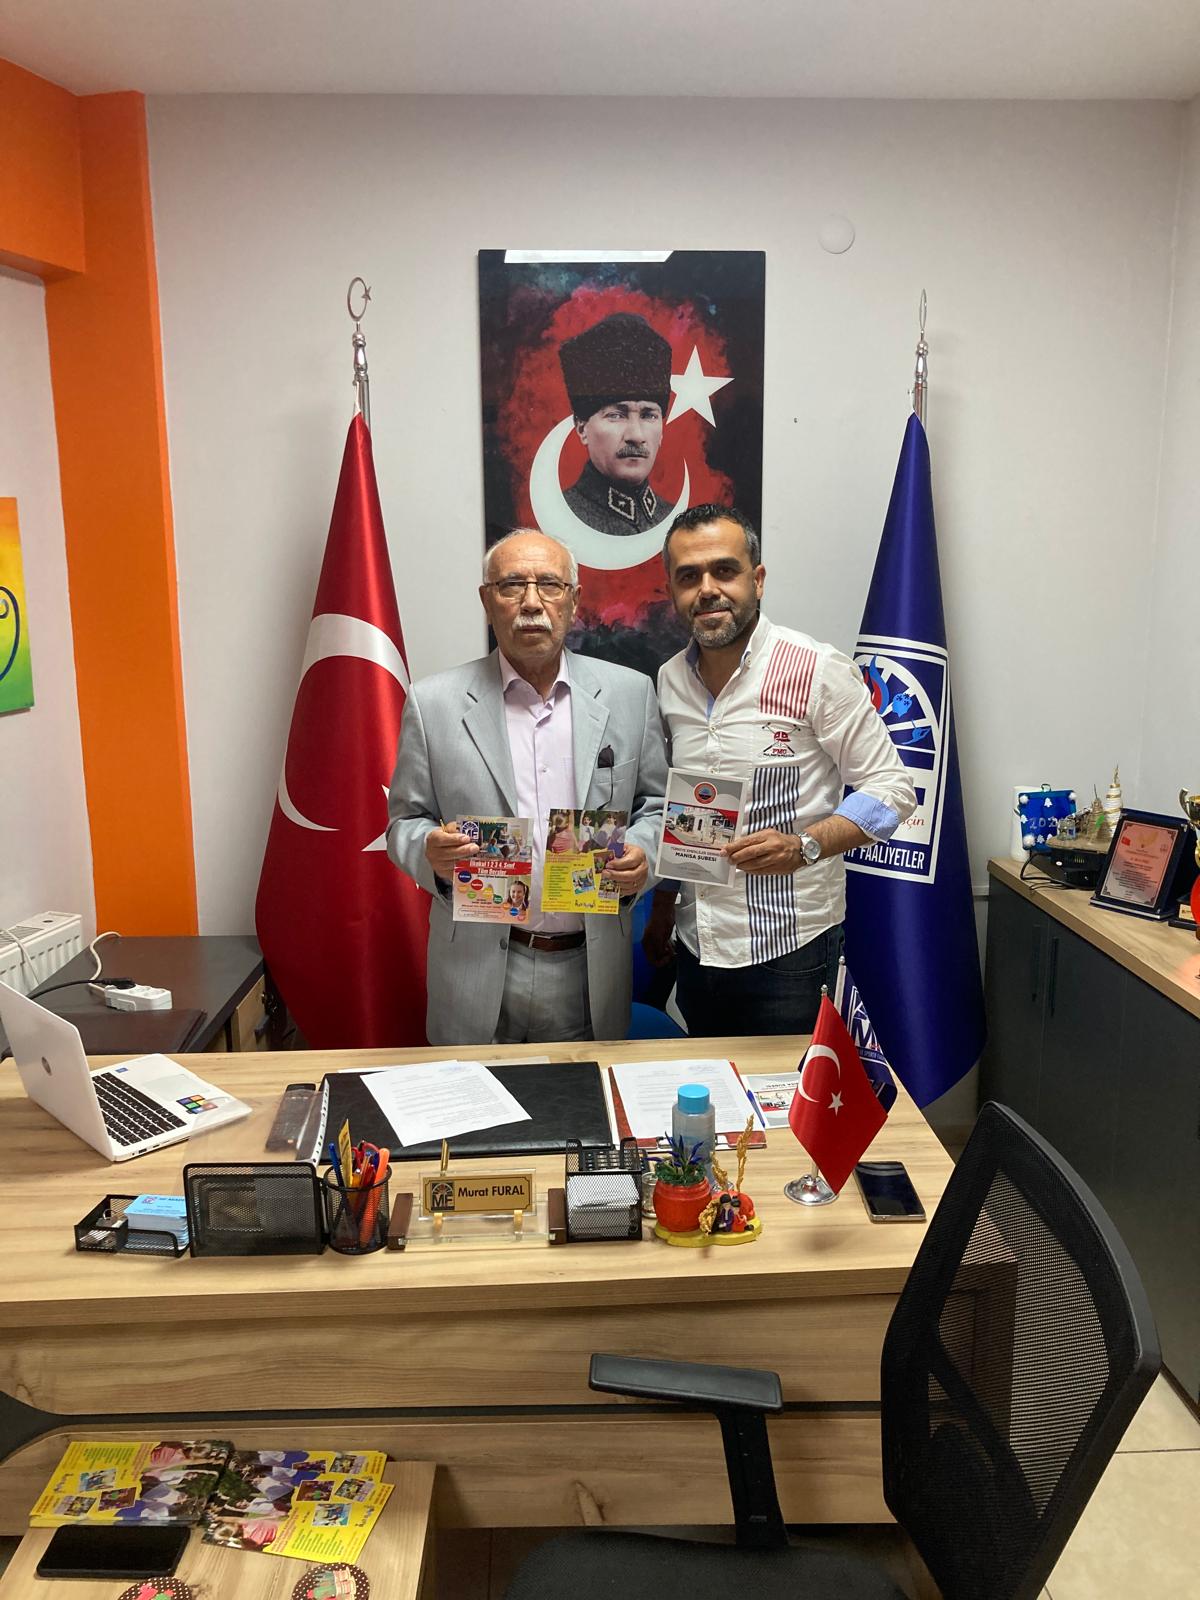 Türkiye Emekliler Derneği Manisa Şubesi Ile İlköyküm Anaokulu Ve Mf Akademi Ile Indirim Protokolü Imzaladı (3)